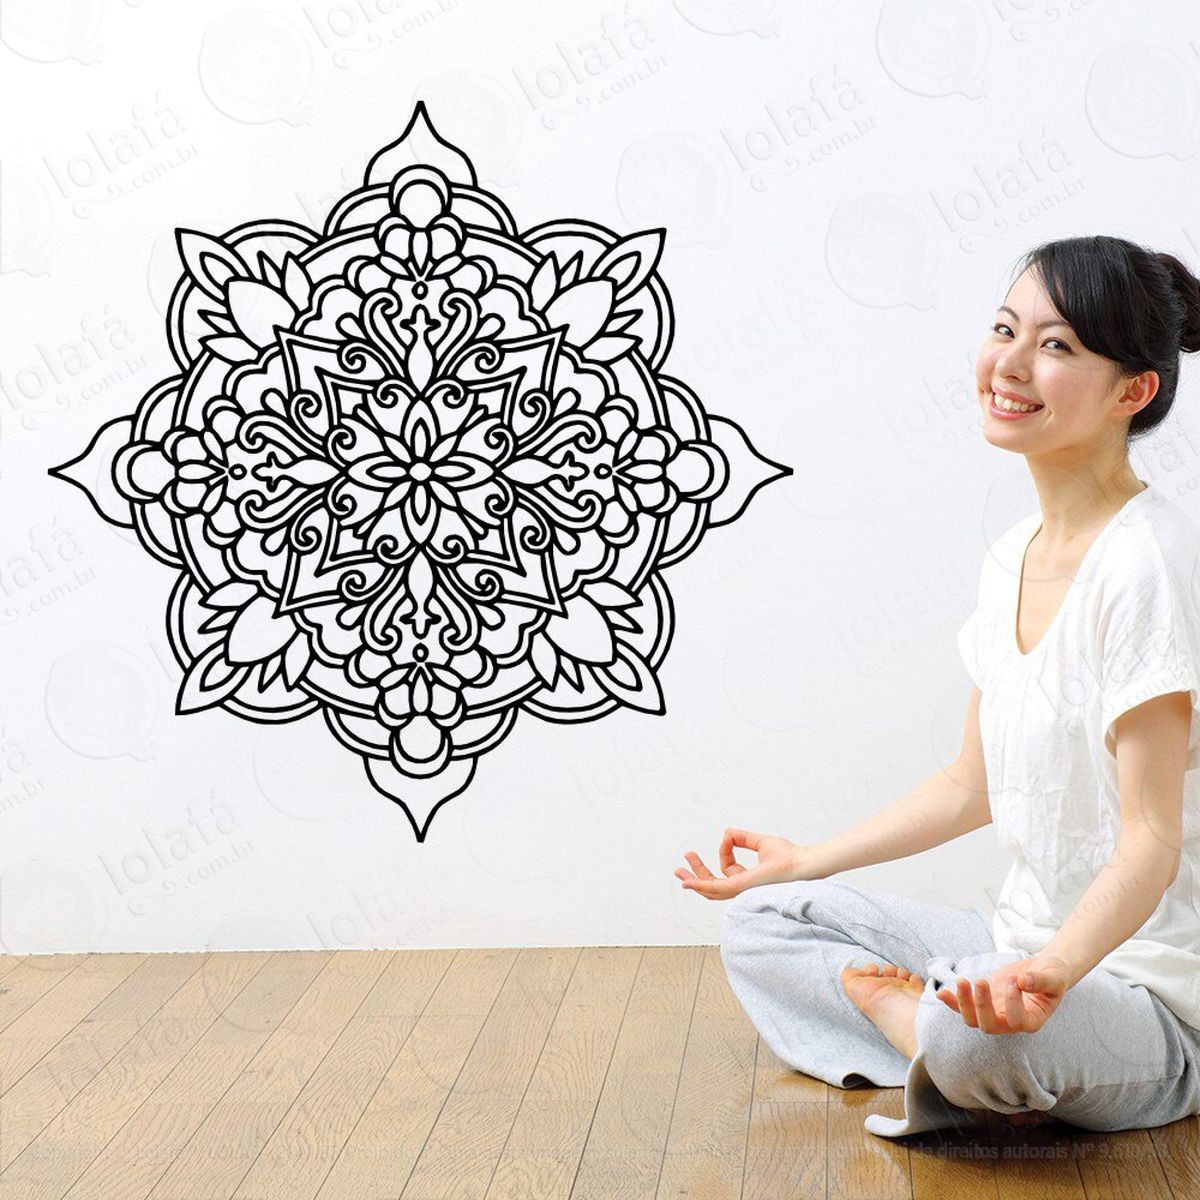 mandala da meditação adesivo de parede decorativo para casa, quarto, sala e vidro - mod:269